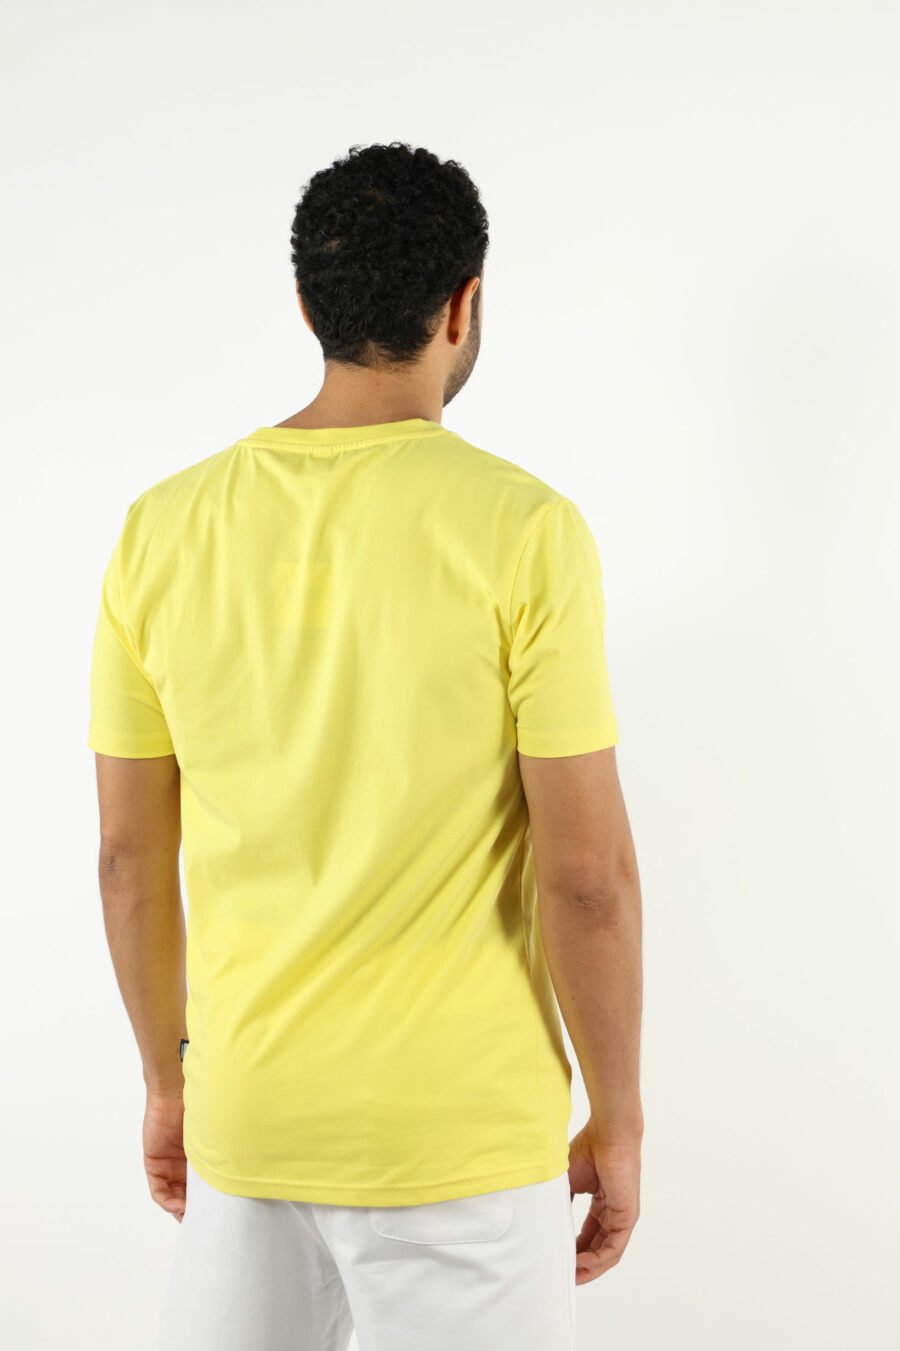 Camiseta amarilla con minilogo parche oso "underbear" - 111028